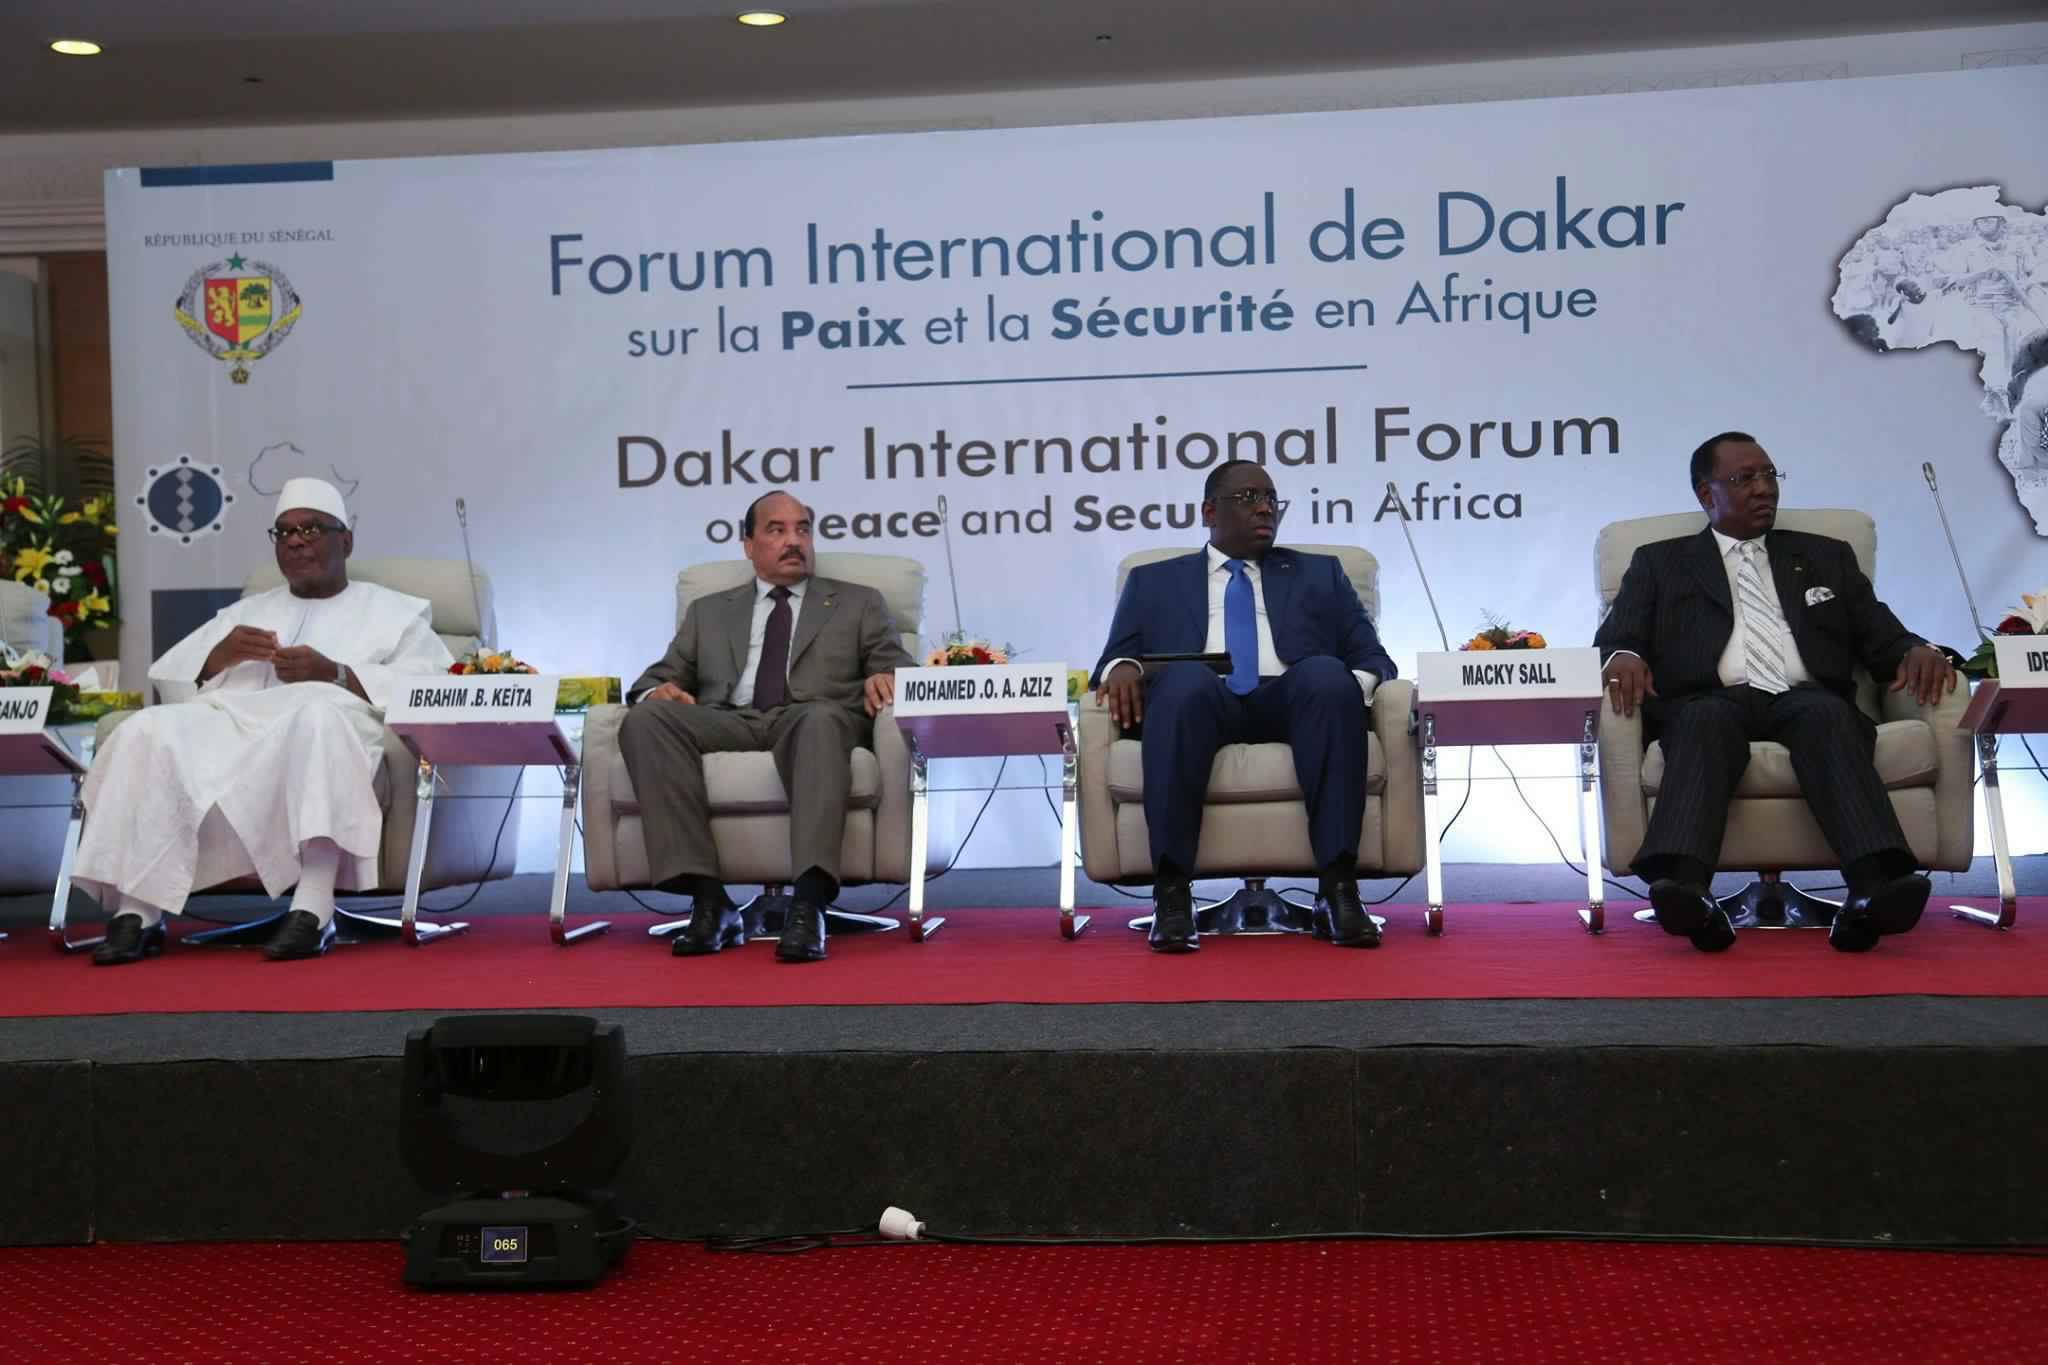 Forum international sur la paix et la sécurité: Beaucoup de défaillances des services de renseignement des pays de l'Afrique de l'ouest